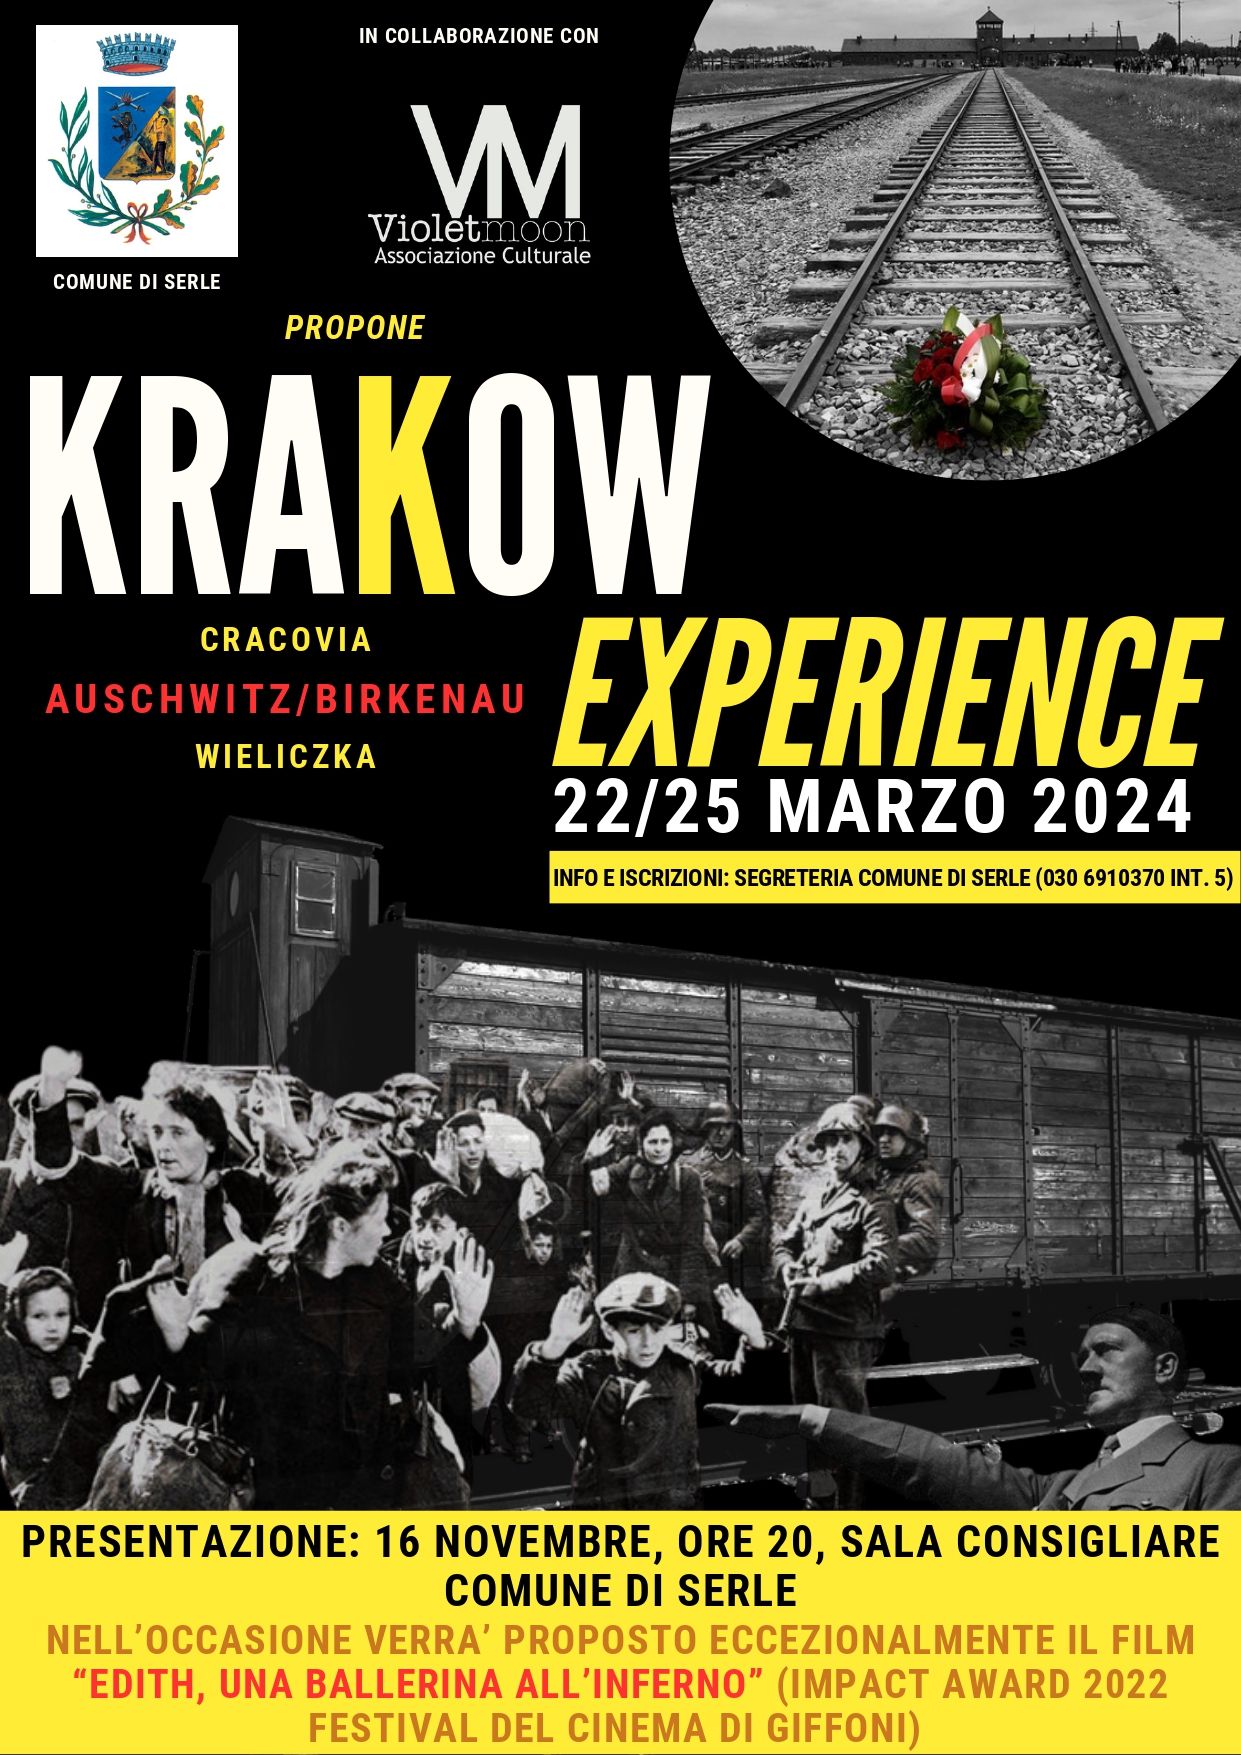 KRAKOW EXPERIENCE - AUSCHWITZ / BIRKENAU 22/25 MARZO 2024